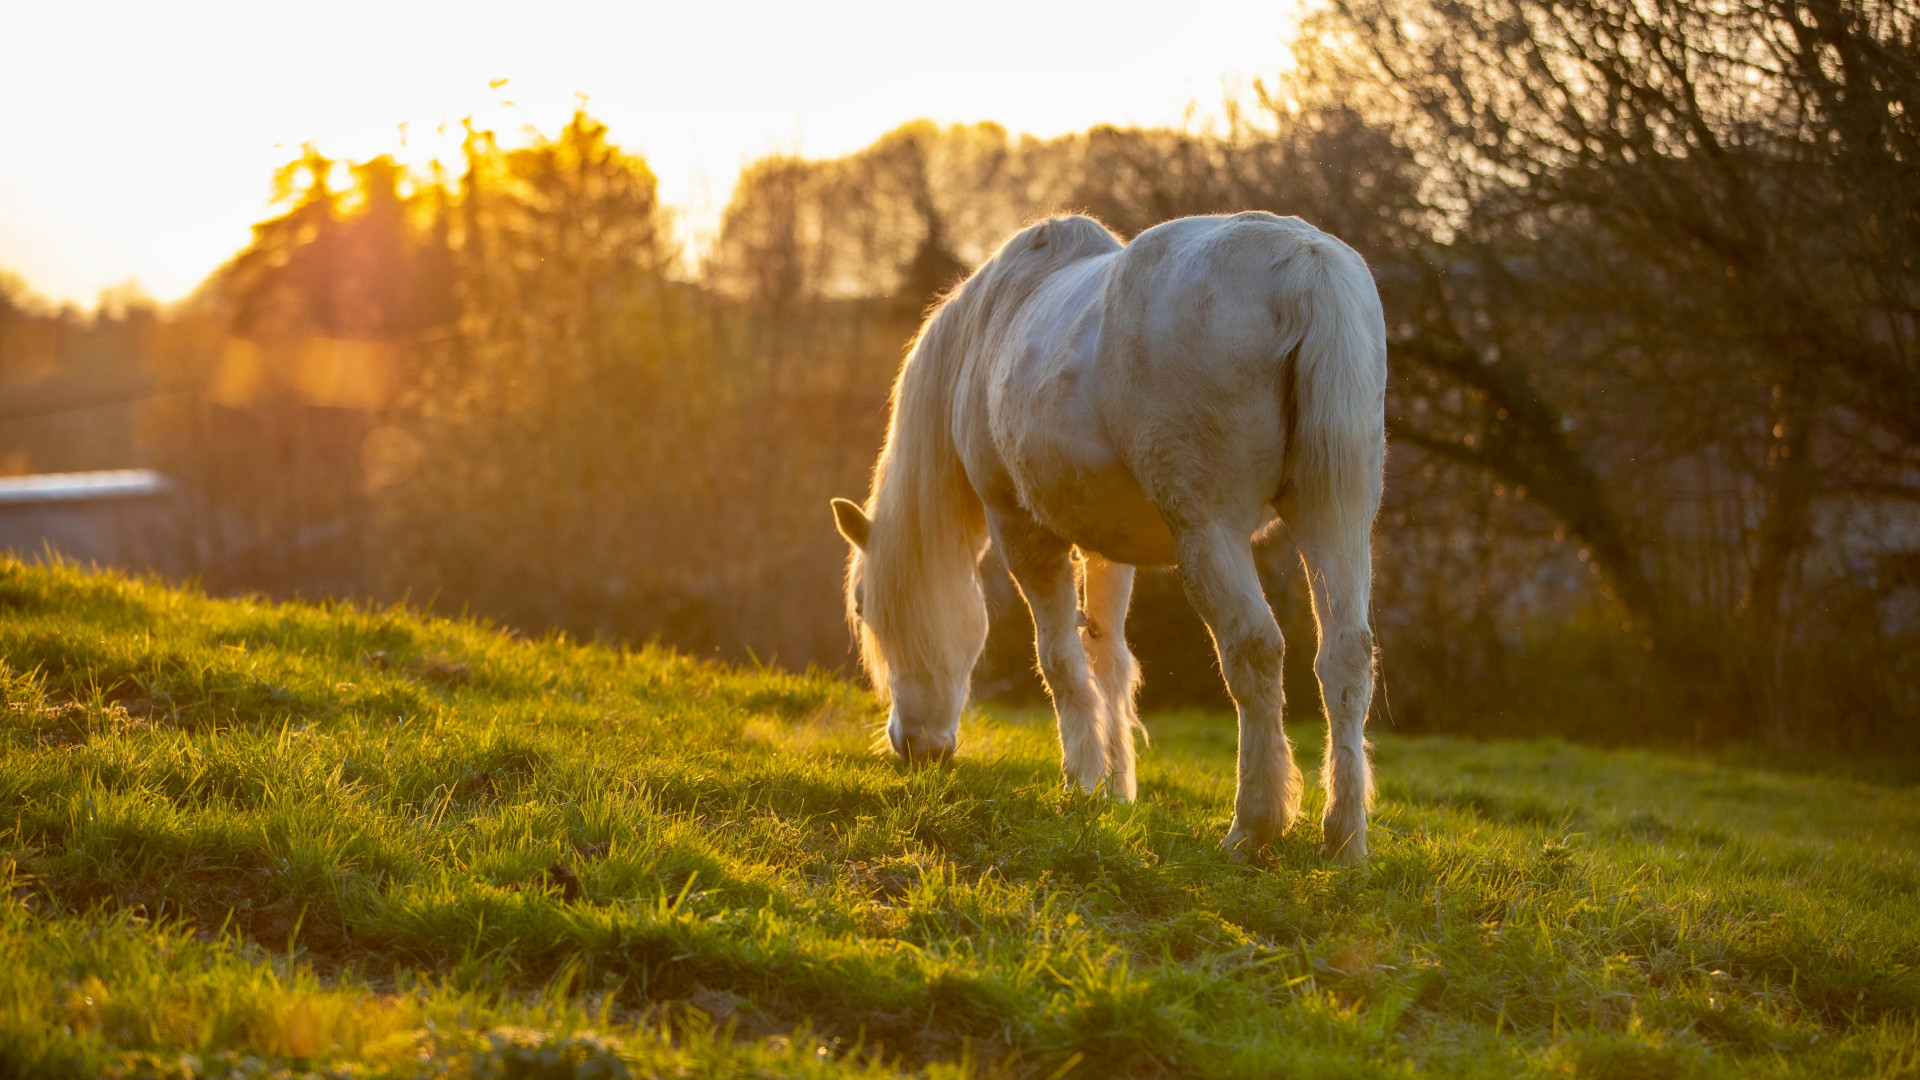 Le crottin de cheval : un fertilisant bio et efficace pour une agriculture durable